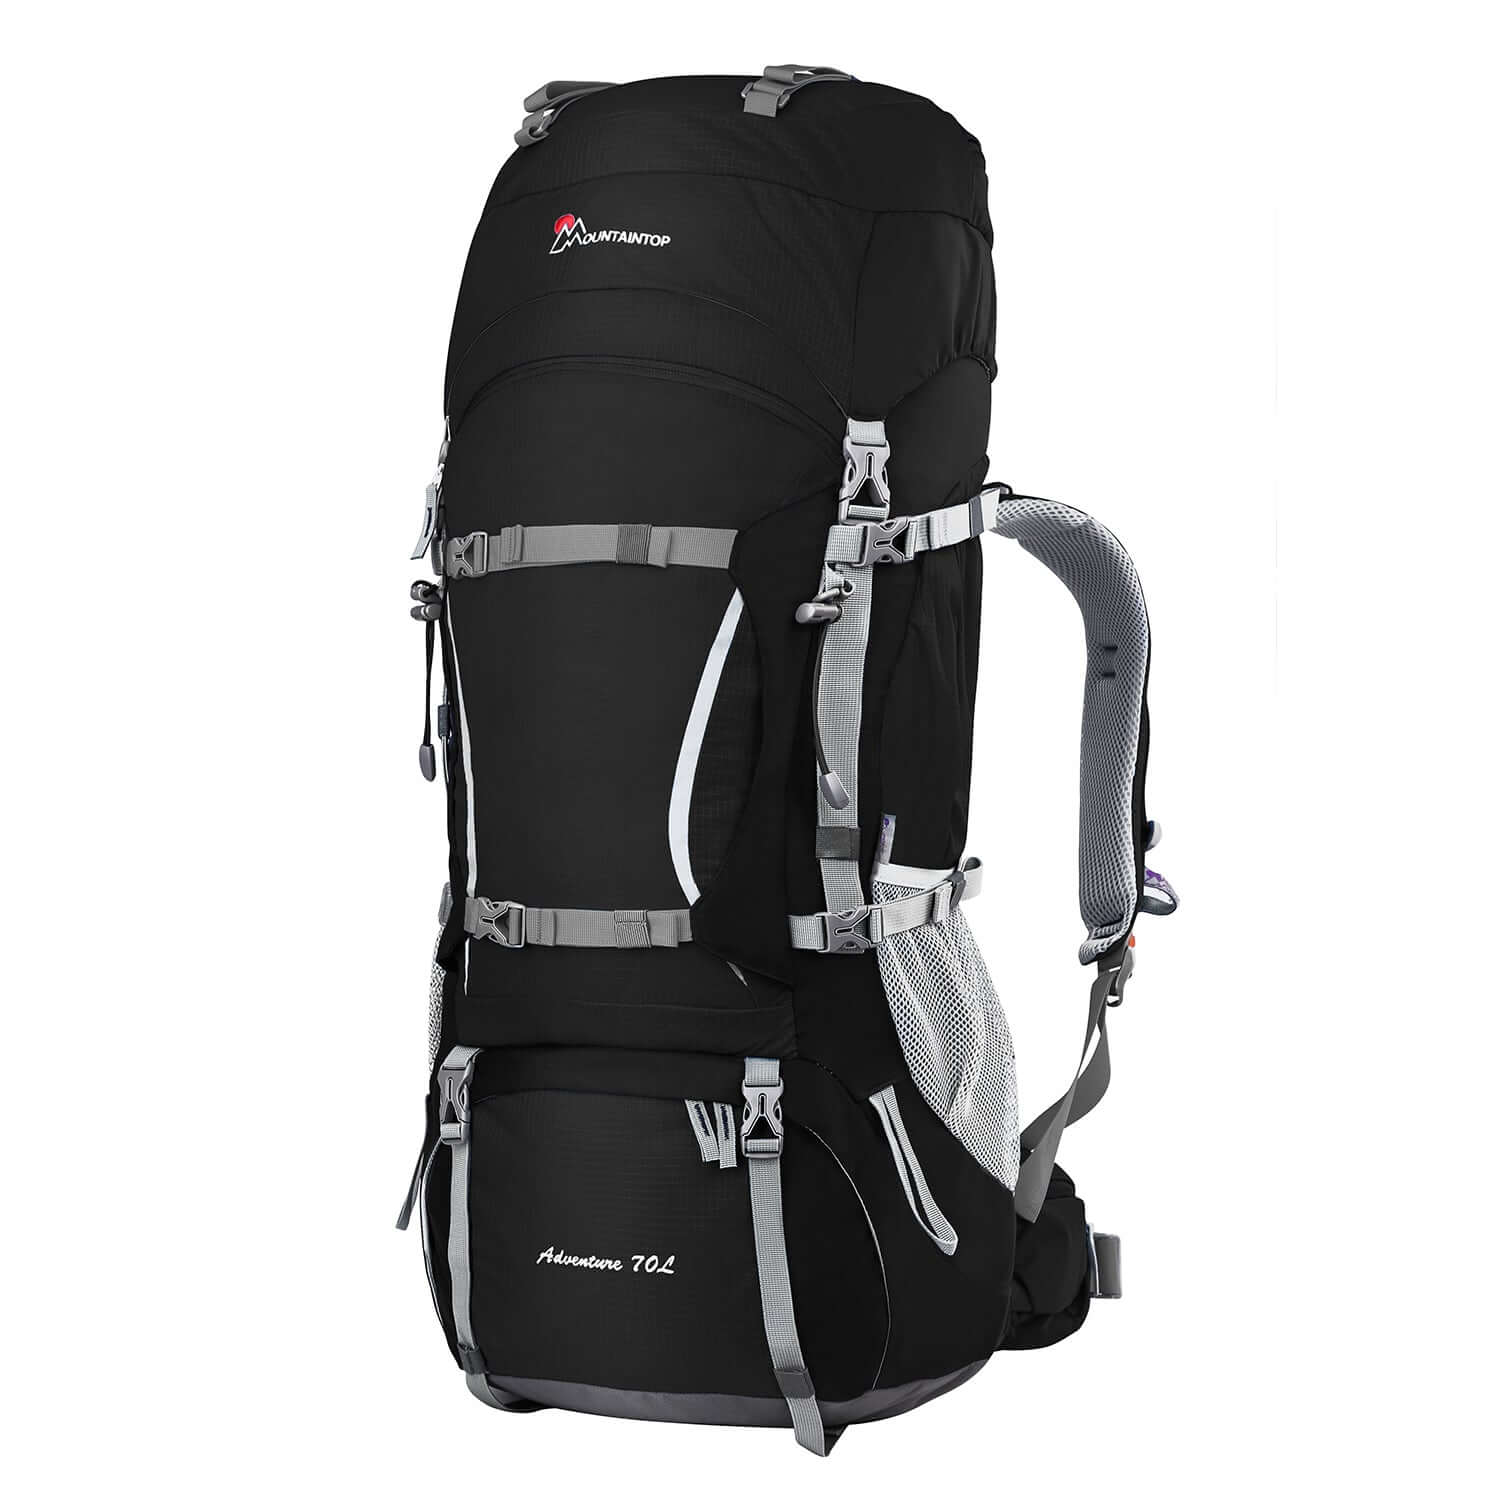 Black Internal Frame Backpack,travel backpack men